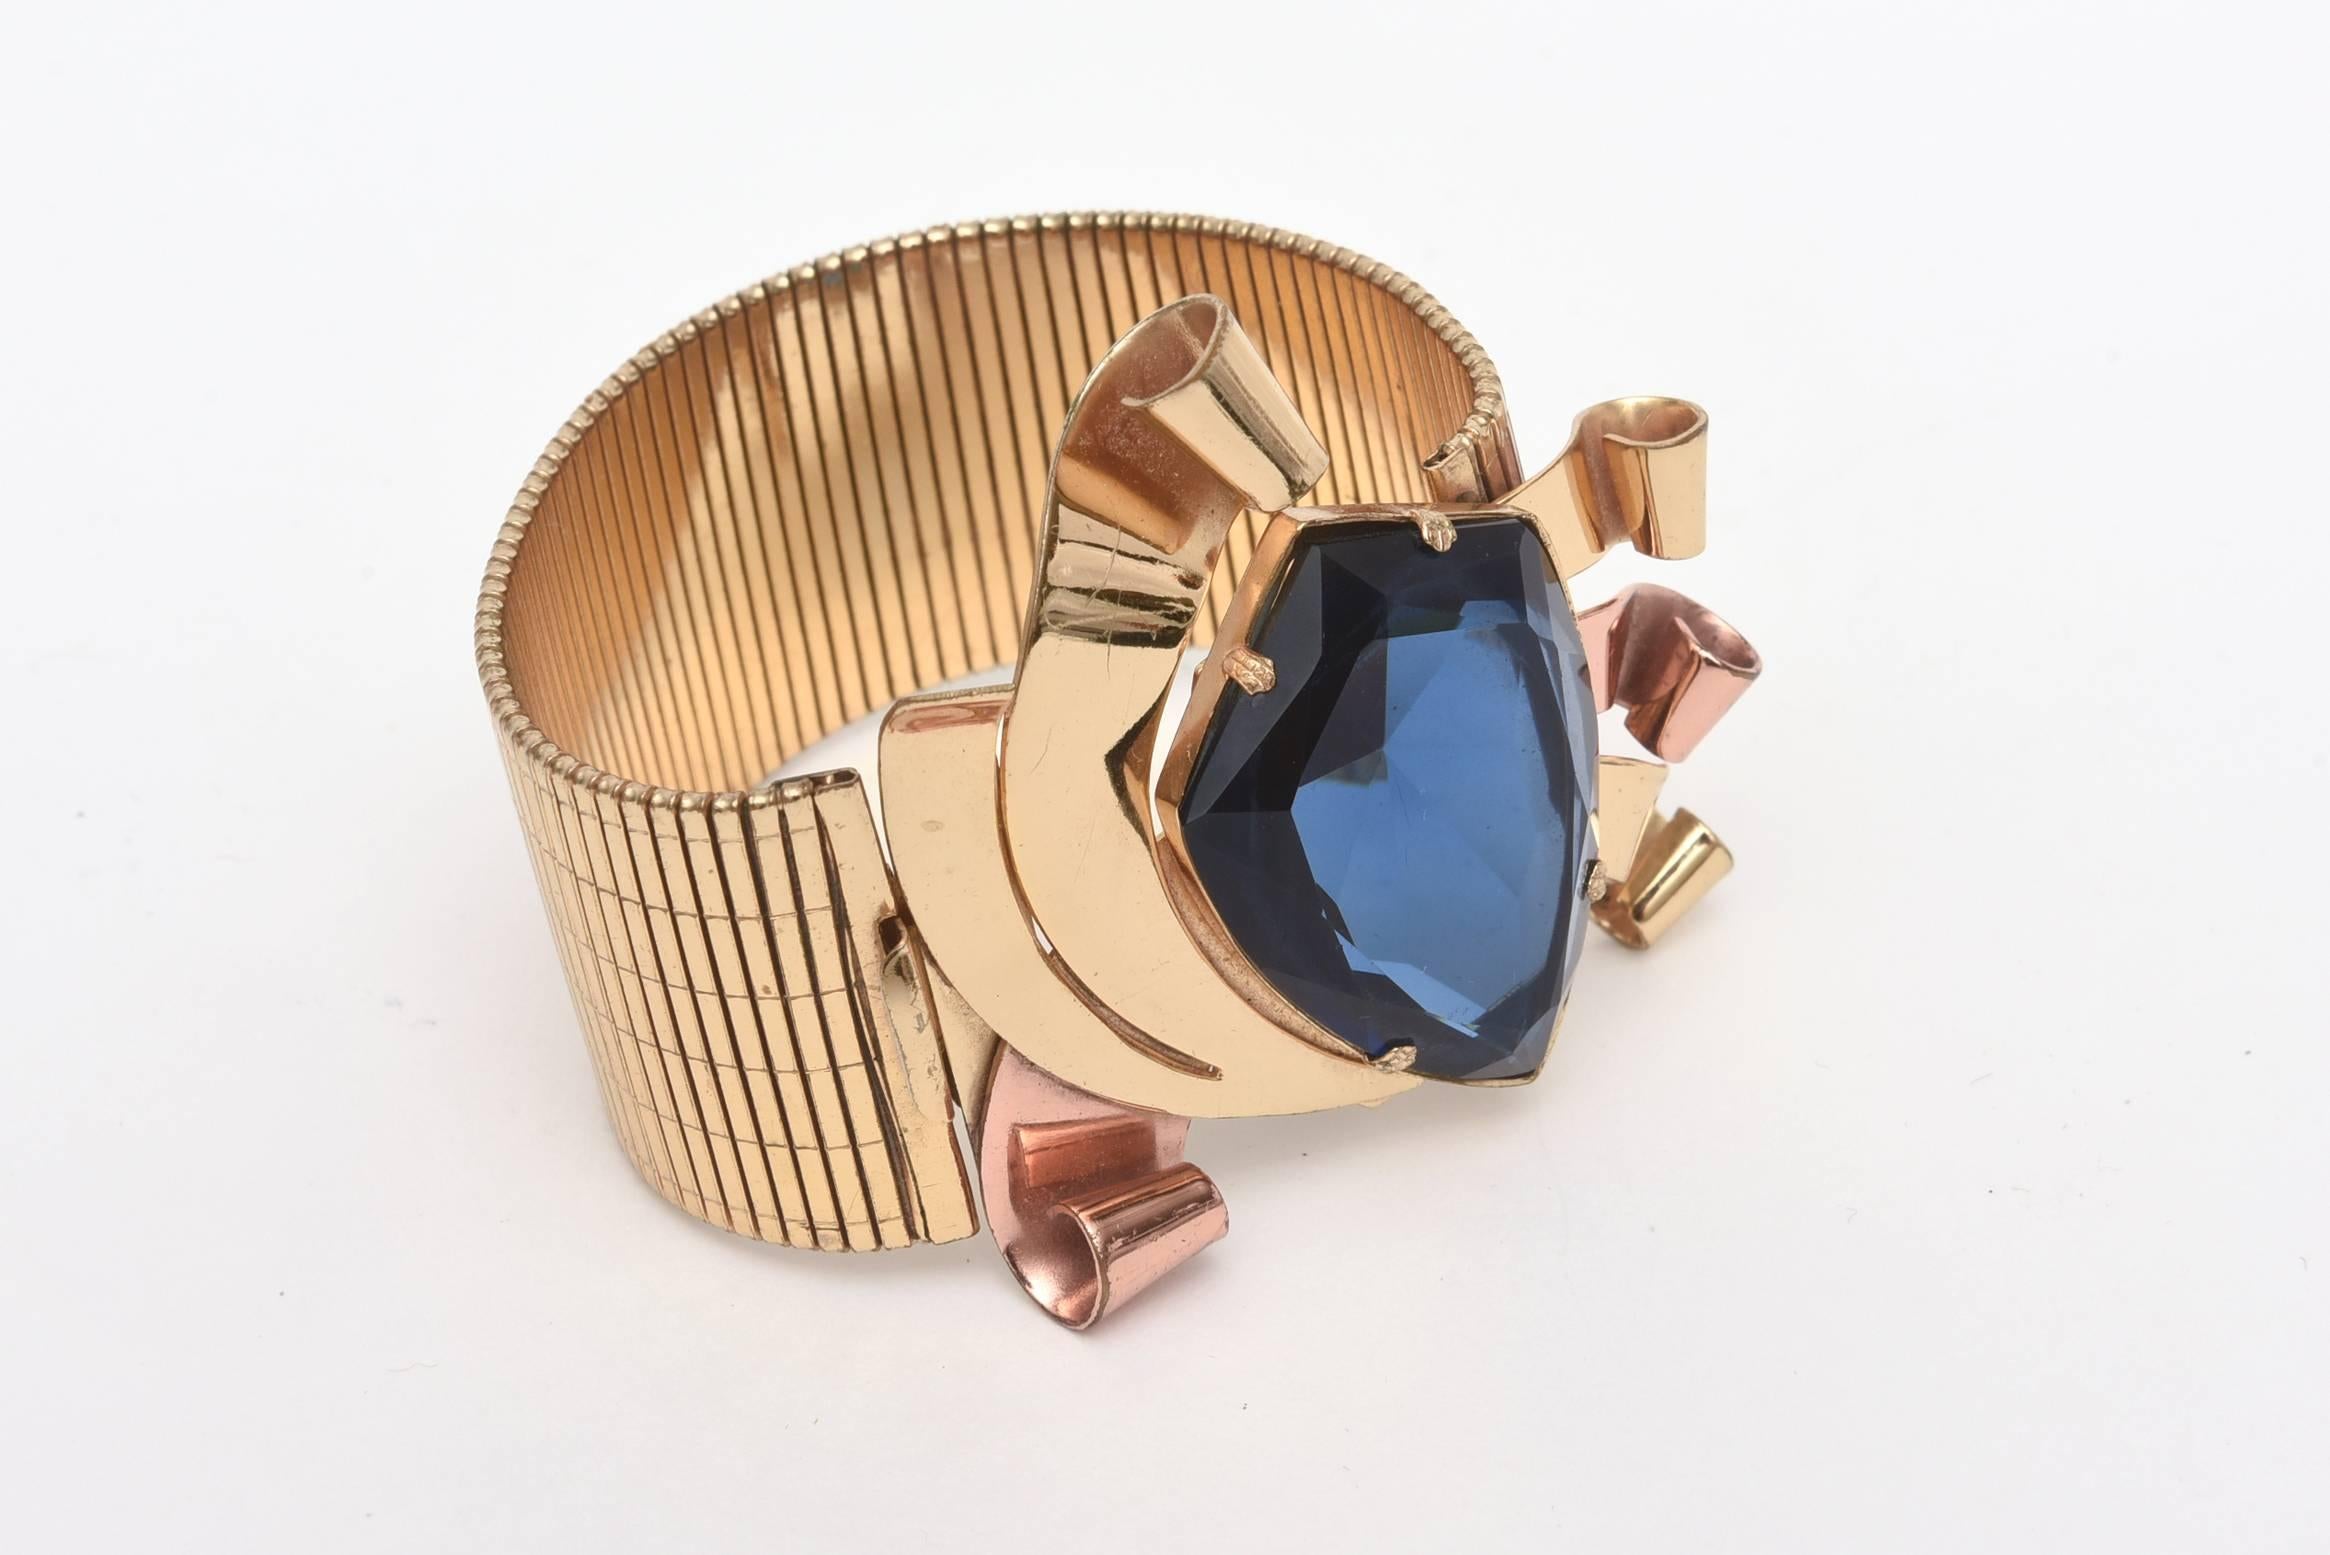 Dieses fabelhafte Retro-Armband sieht echt aus! Der leuchtend blaue, facettierte Glasstein ist lebendig und steht im Mittelpunkt. Die Kombination der beiden Metalle Rippenvergoldung und Kupfer trägt zur Theatralik dieses ungewöhnlichen Armbands mit